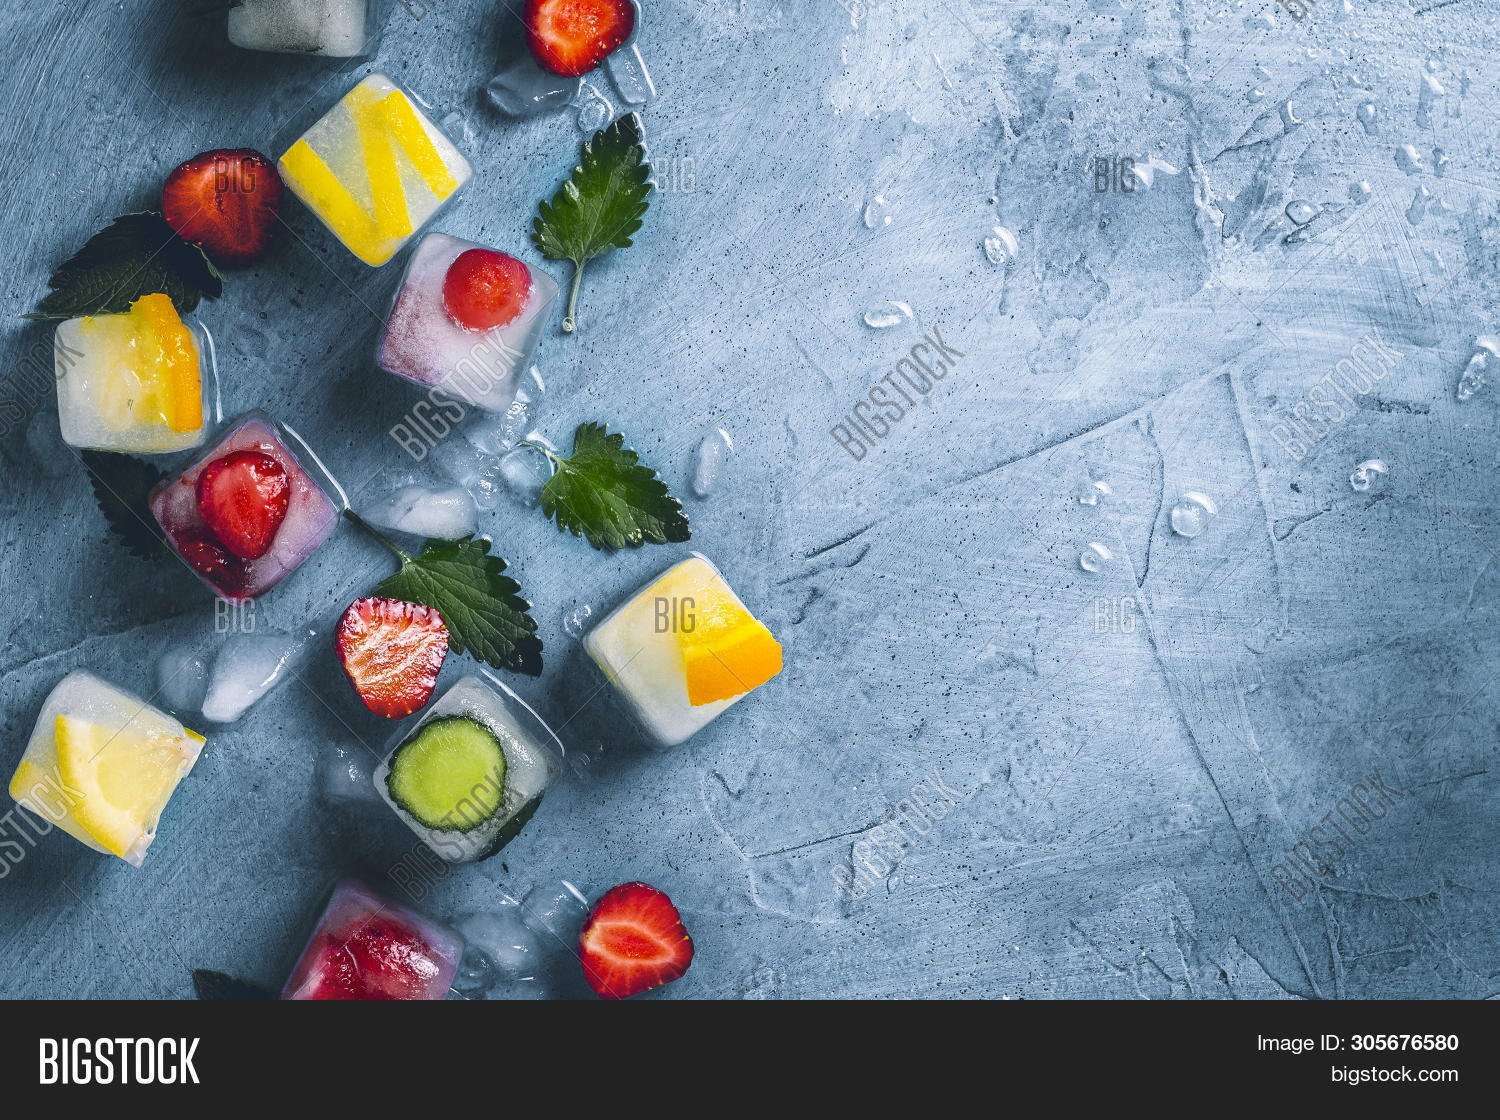 Лед 5 букв на т. Кубики льда с фруктами. Фрукты во льду. Ягоды во льду. Овощи во льду.